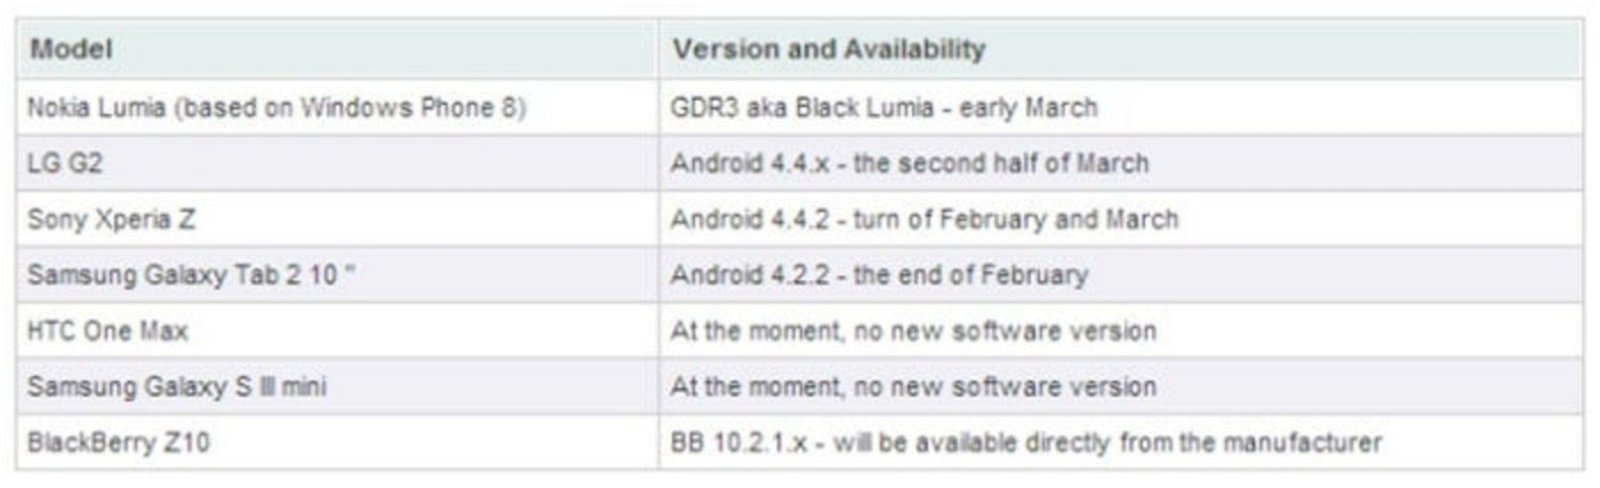 Captura de álbum mostrando actualizaciones de terminales